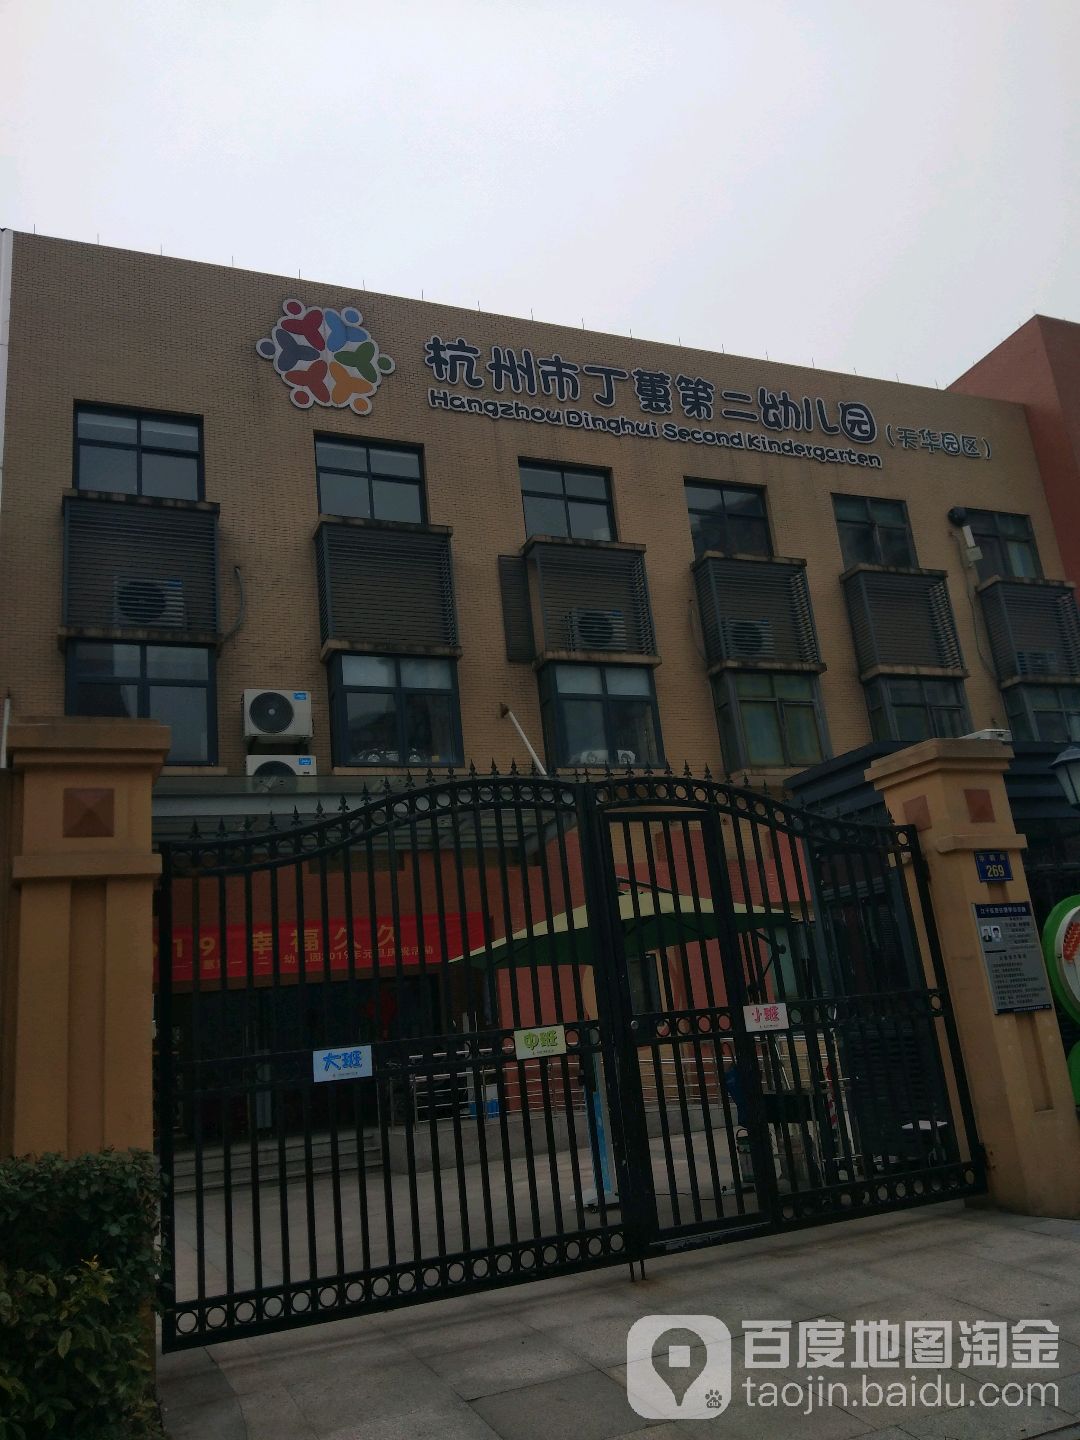 杭州市丁蕙第二幼儿园(天华园区)的图片